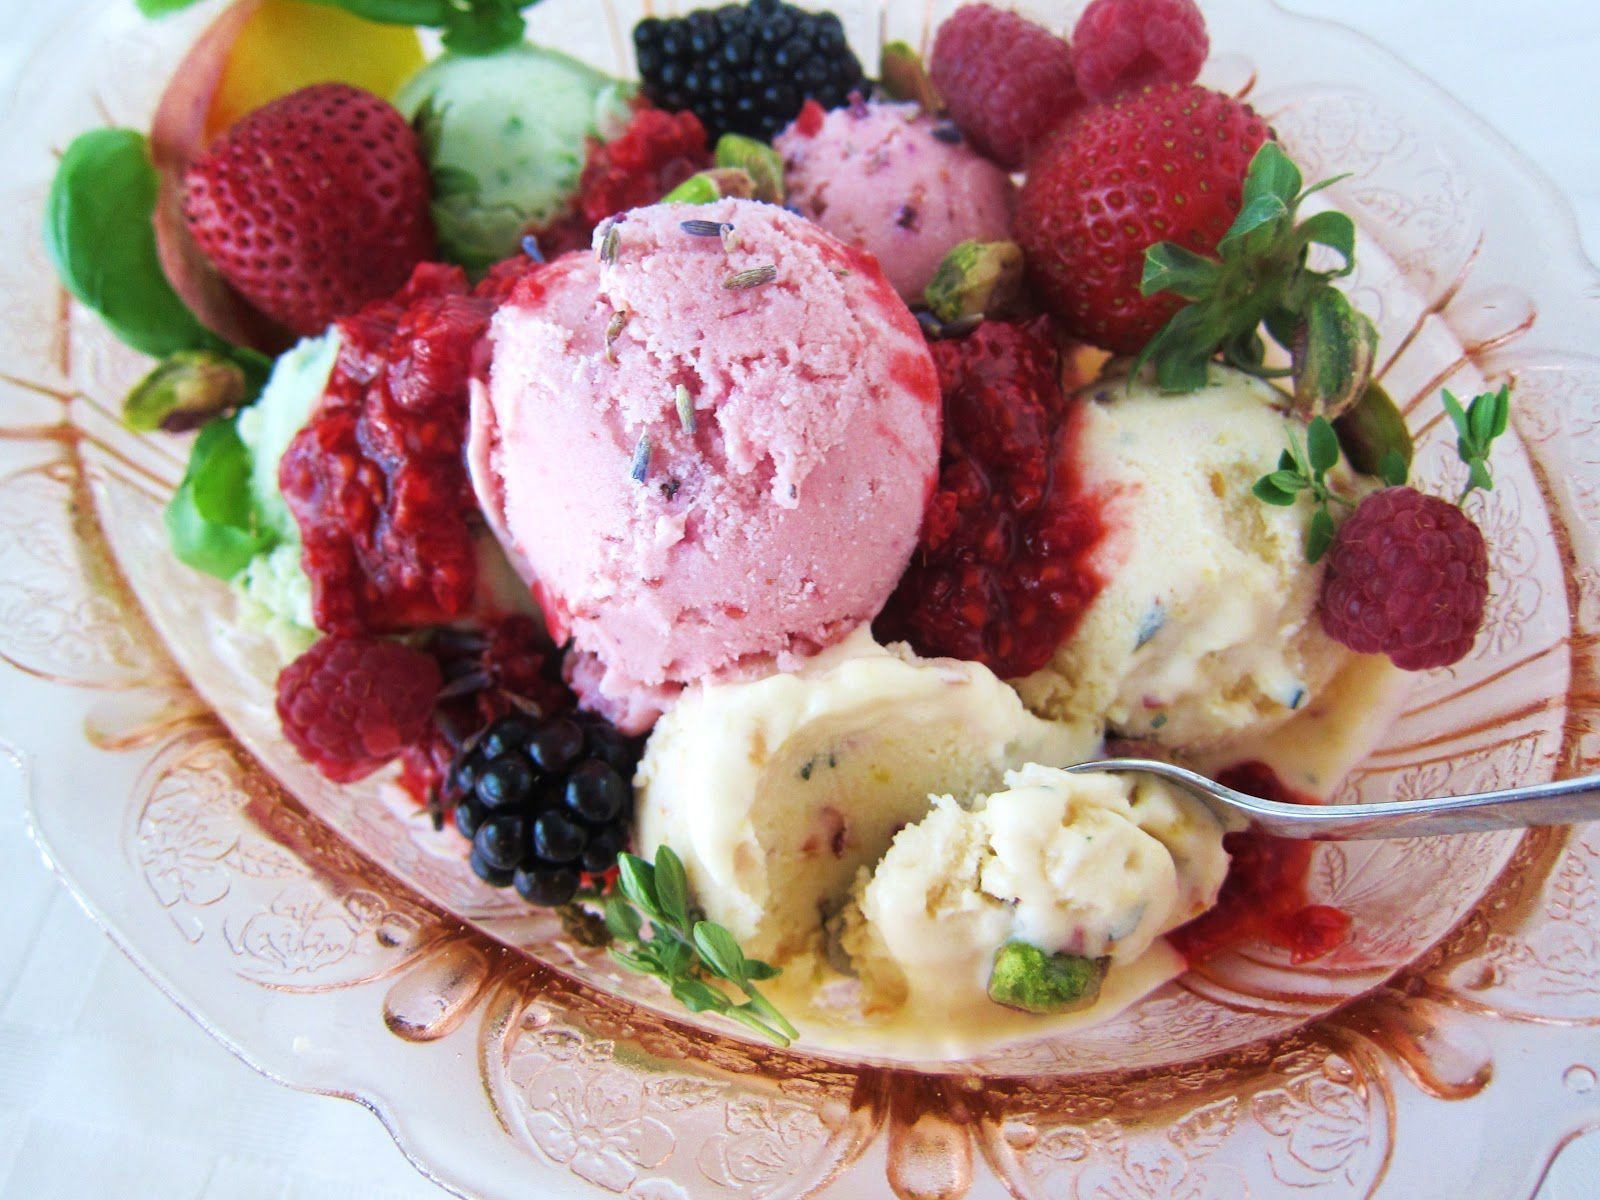 Фруктовый пломбир. Мороженое с ягодами. Мороженое с фруктами. Десерт мороженое с фруктами. Фруктовый салат с мороженым.